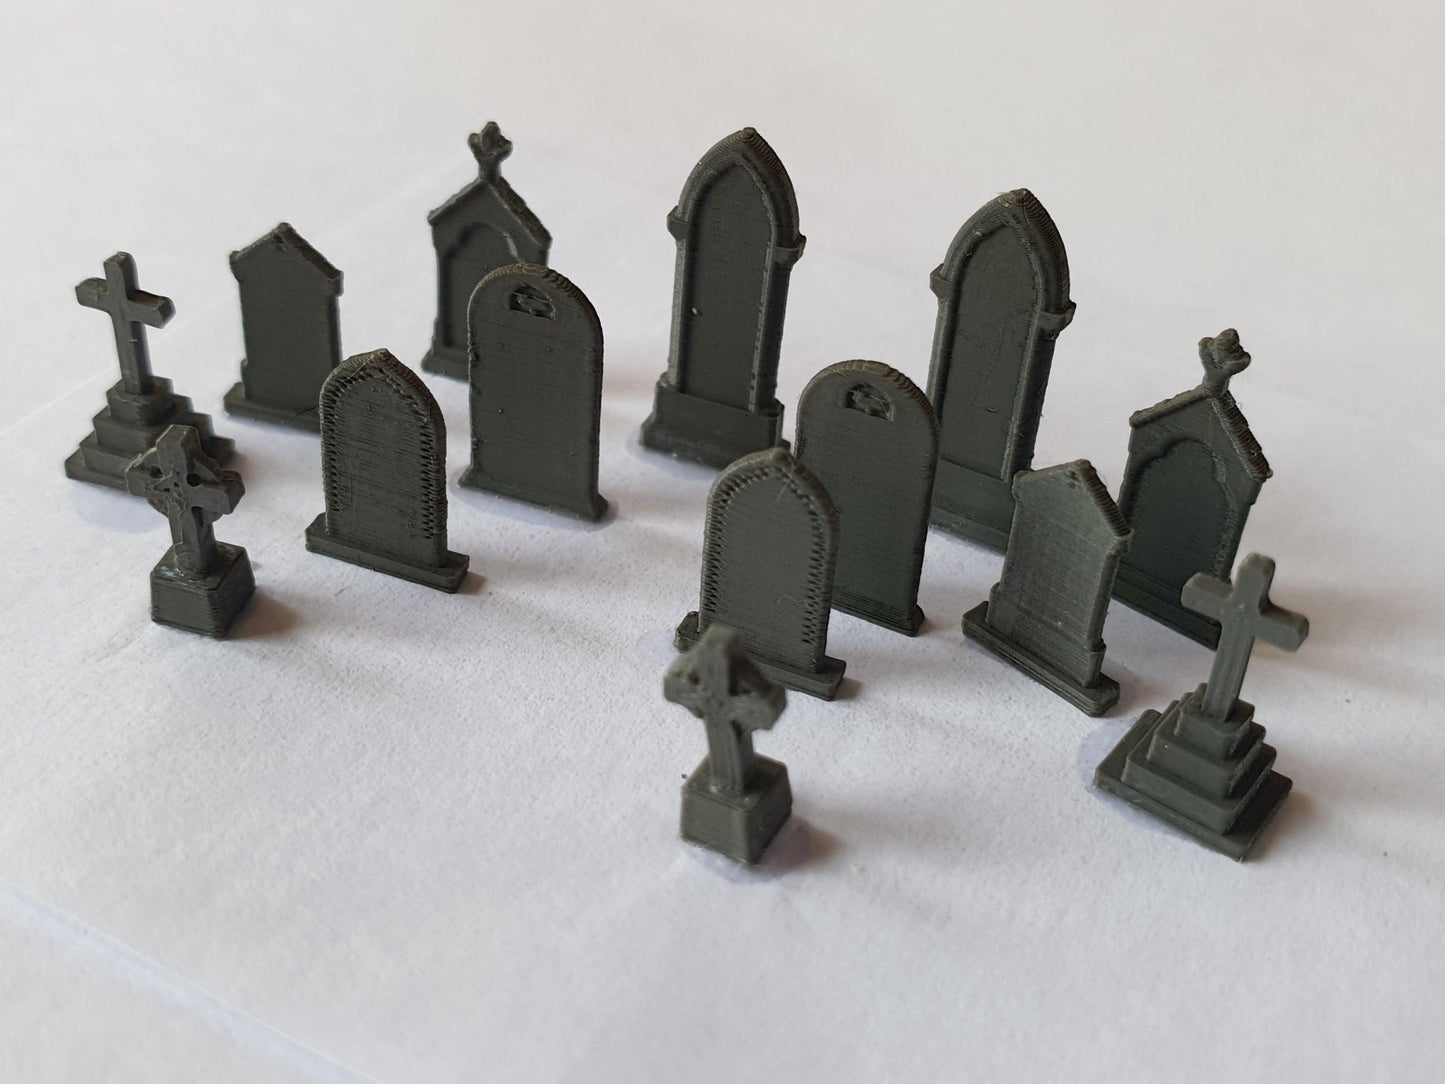 TT scale models of old gravestones - Three Peaks Models